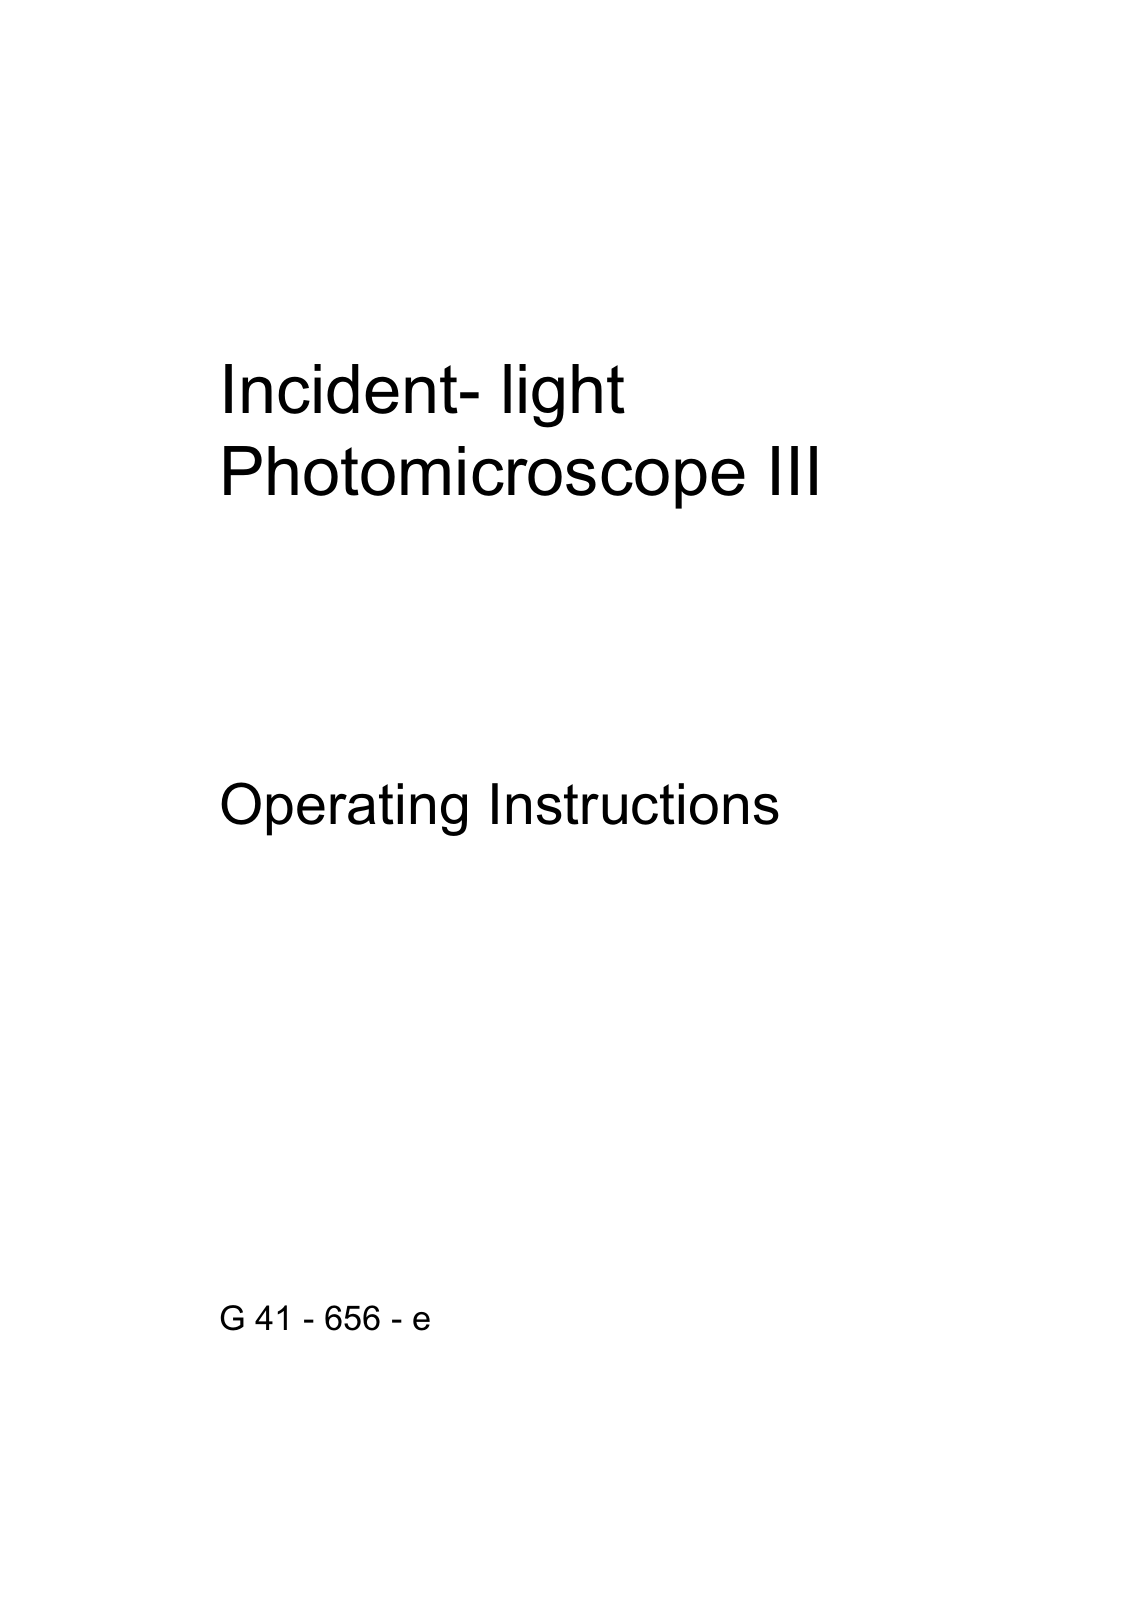 Zeiss Photomicroscope III User Manual